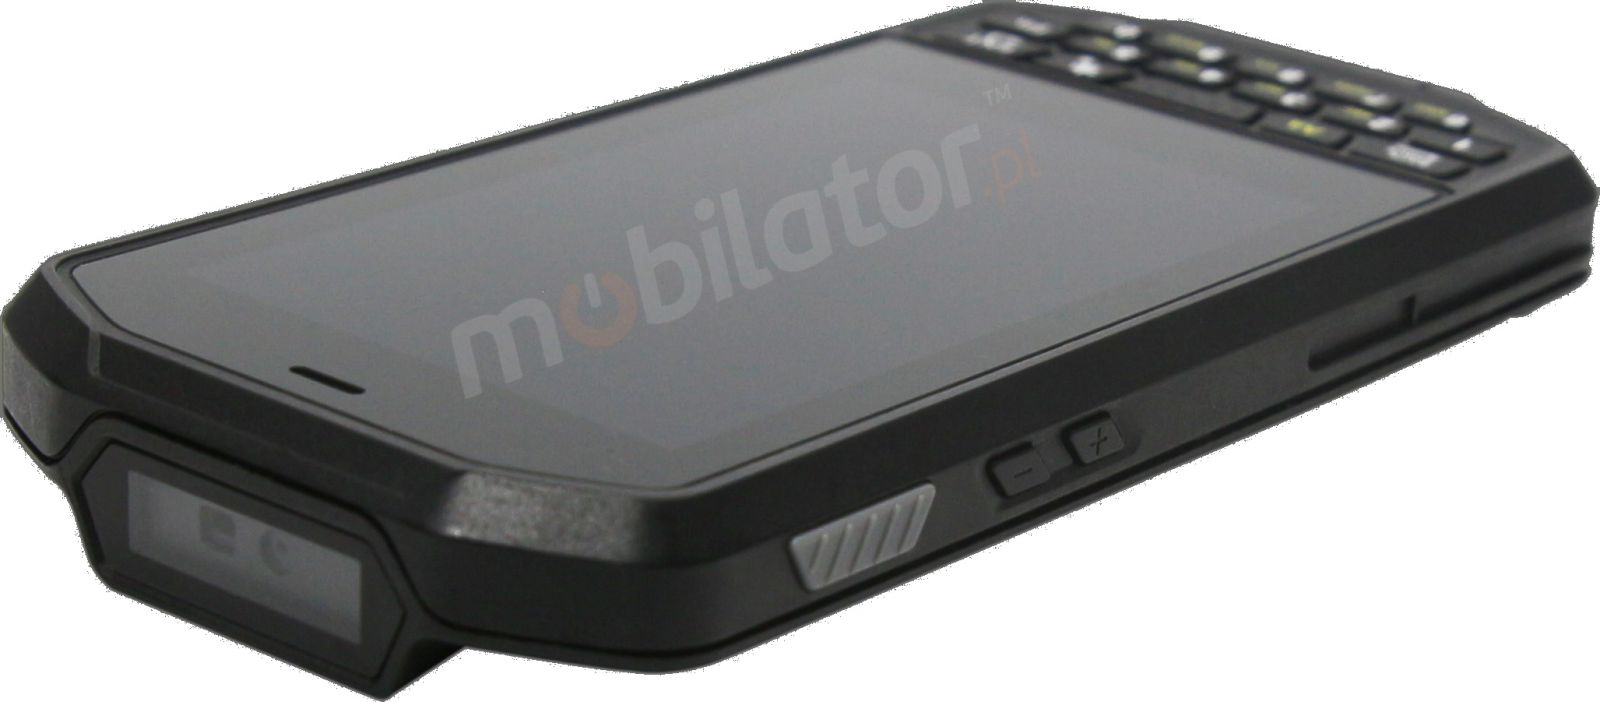 Mobipad Qxtron 4100 v.8 - Wytrzymay (IP65 + MIL-STD-810G) terminal danych z systemem Android 9.0, czytnikiem kodw 2D Honeywell, NFC, 4GB RAM,64GB ROM + czytnik radiowy UHF